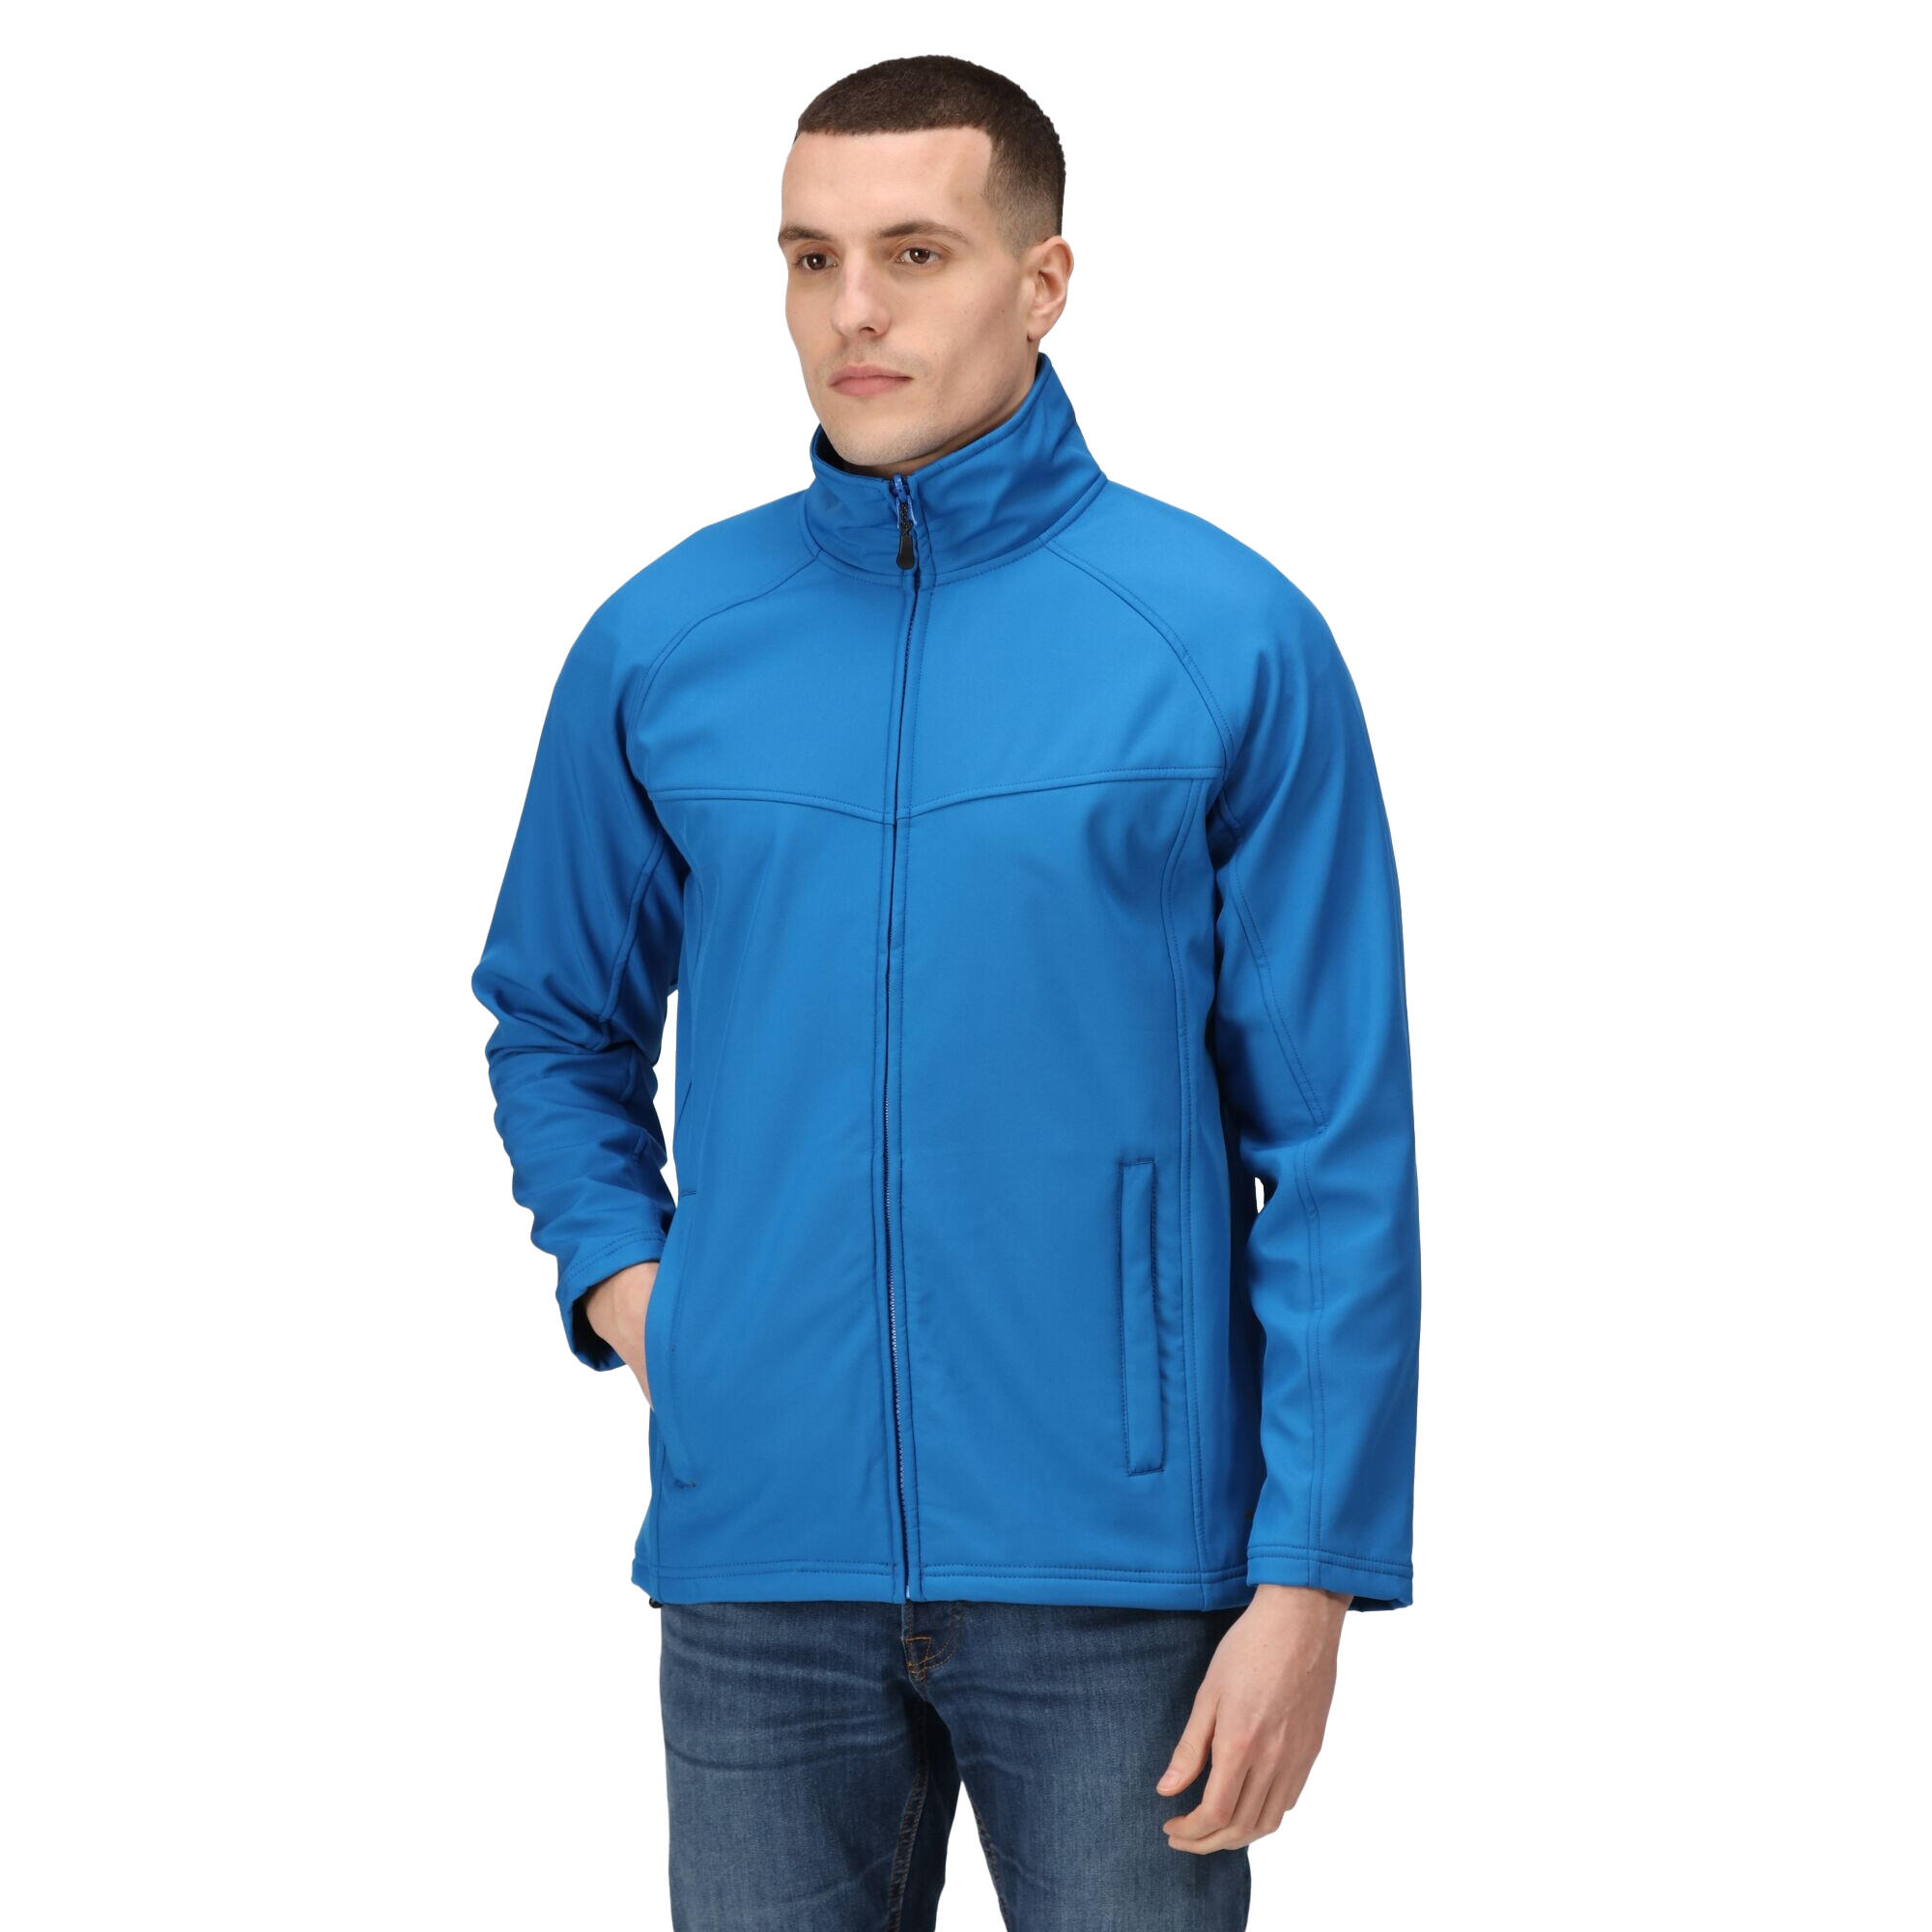 Uproar Mens Softshell Wind Resistant Fleece Jacket (Oxford Blue) 3/4